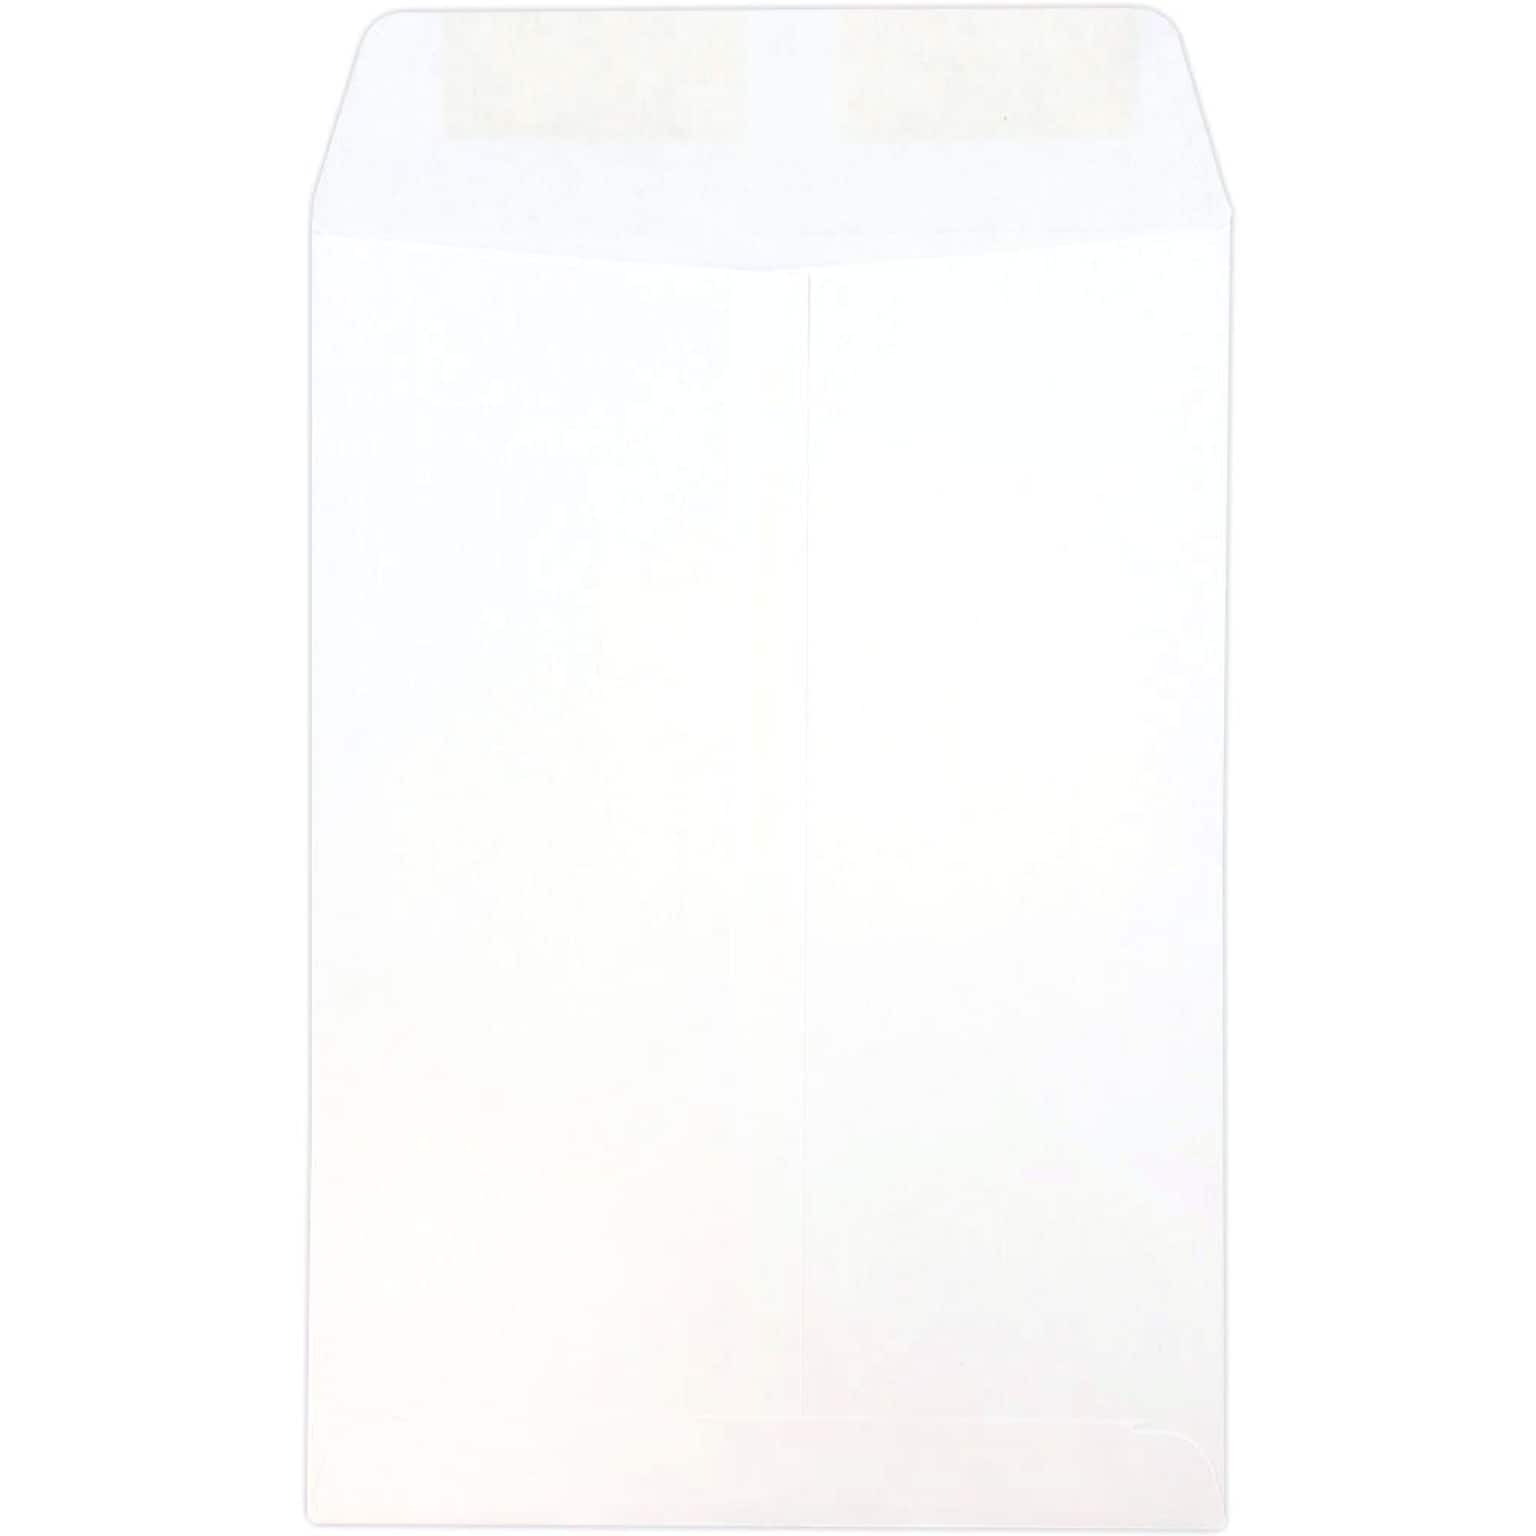 JAM Paper Open End Catalog Envelope, 7 1/2 x 10 1/2, White, 25/Pack (4120)